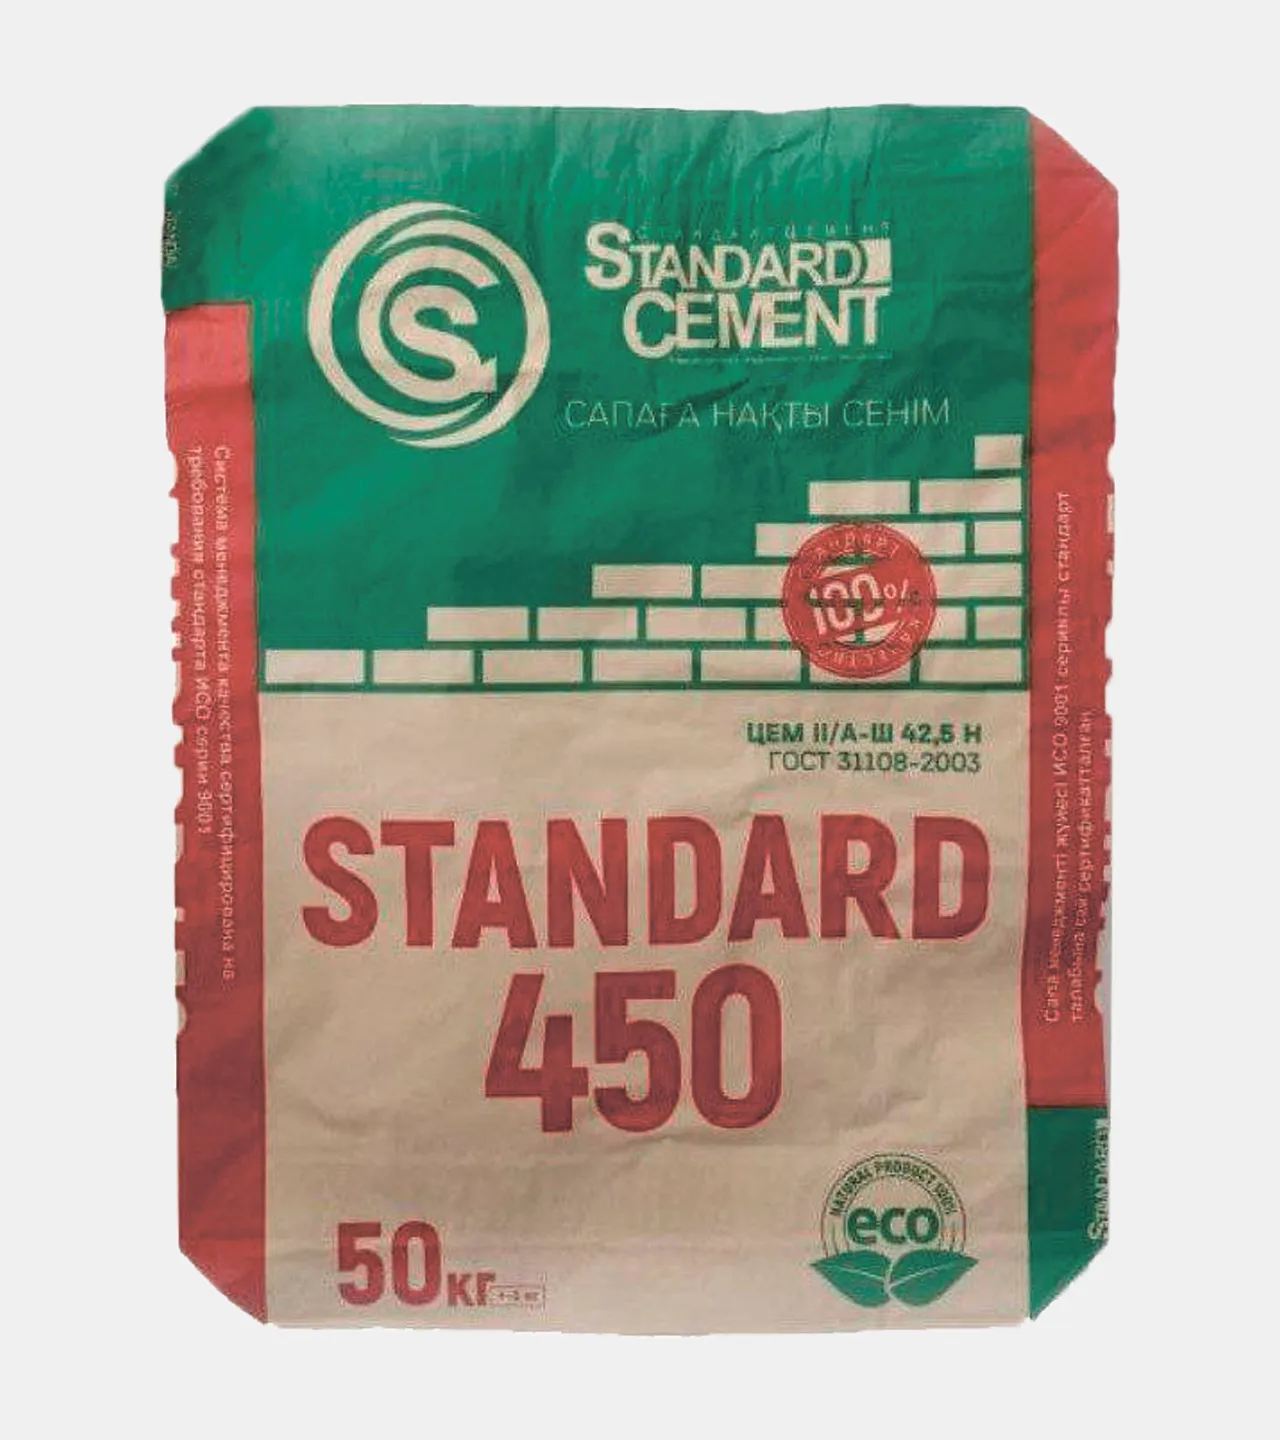 Standard sement 450M#1